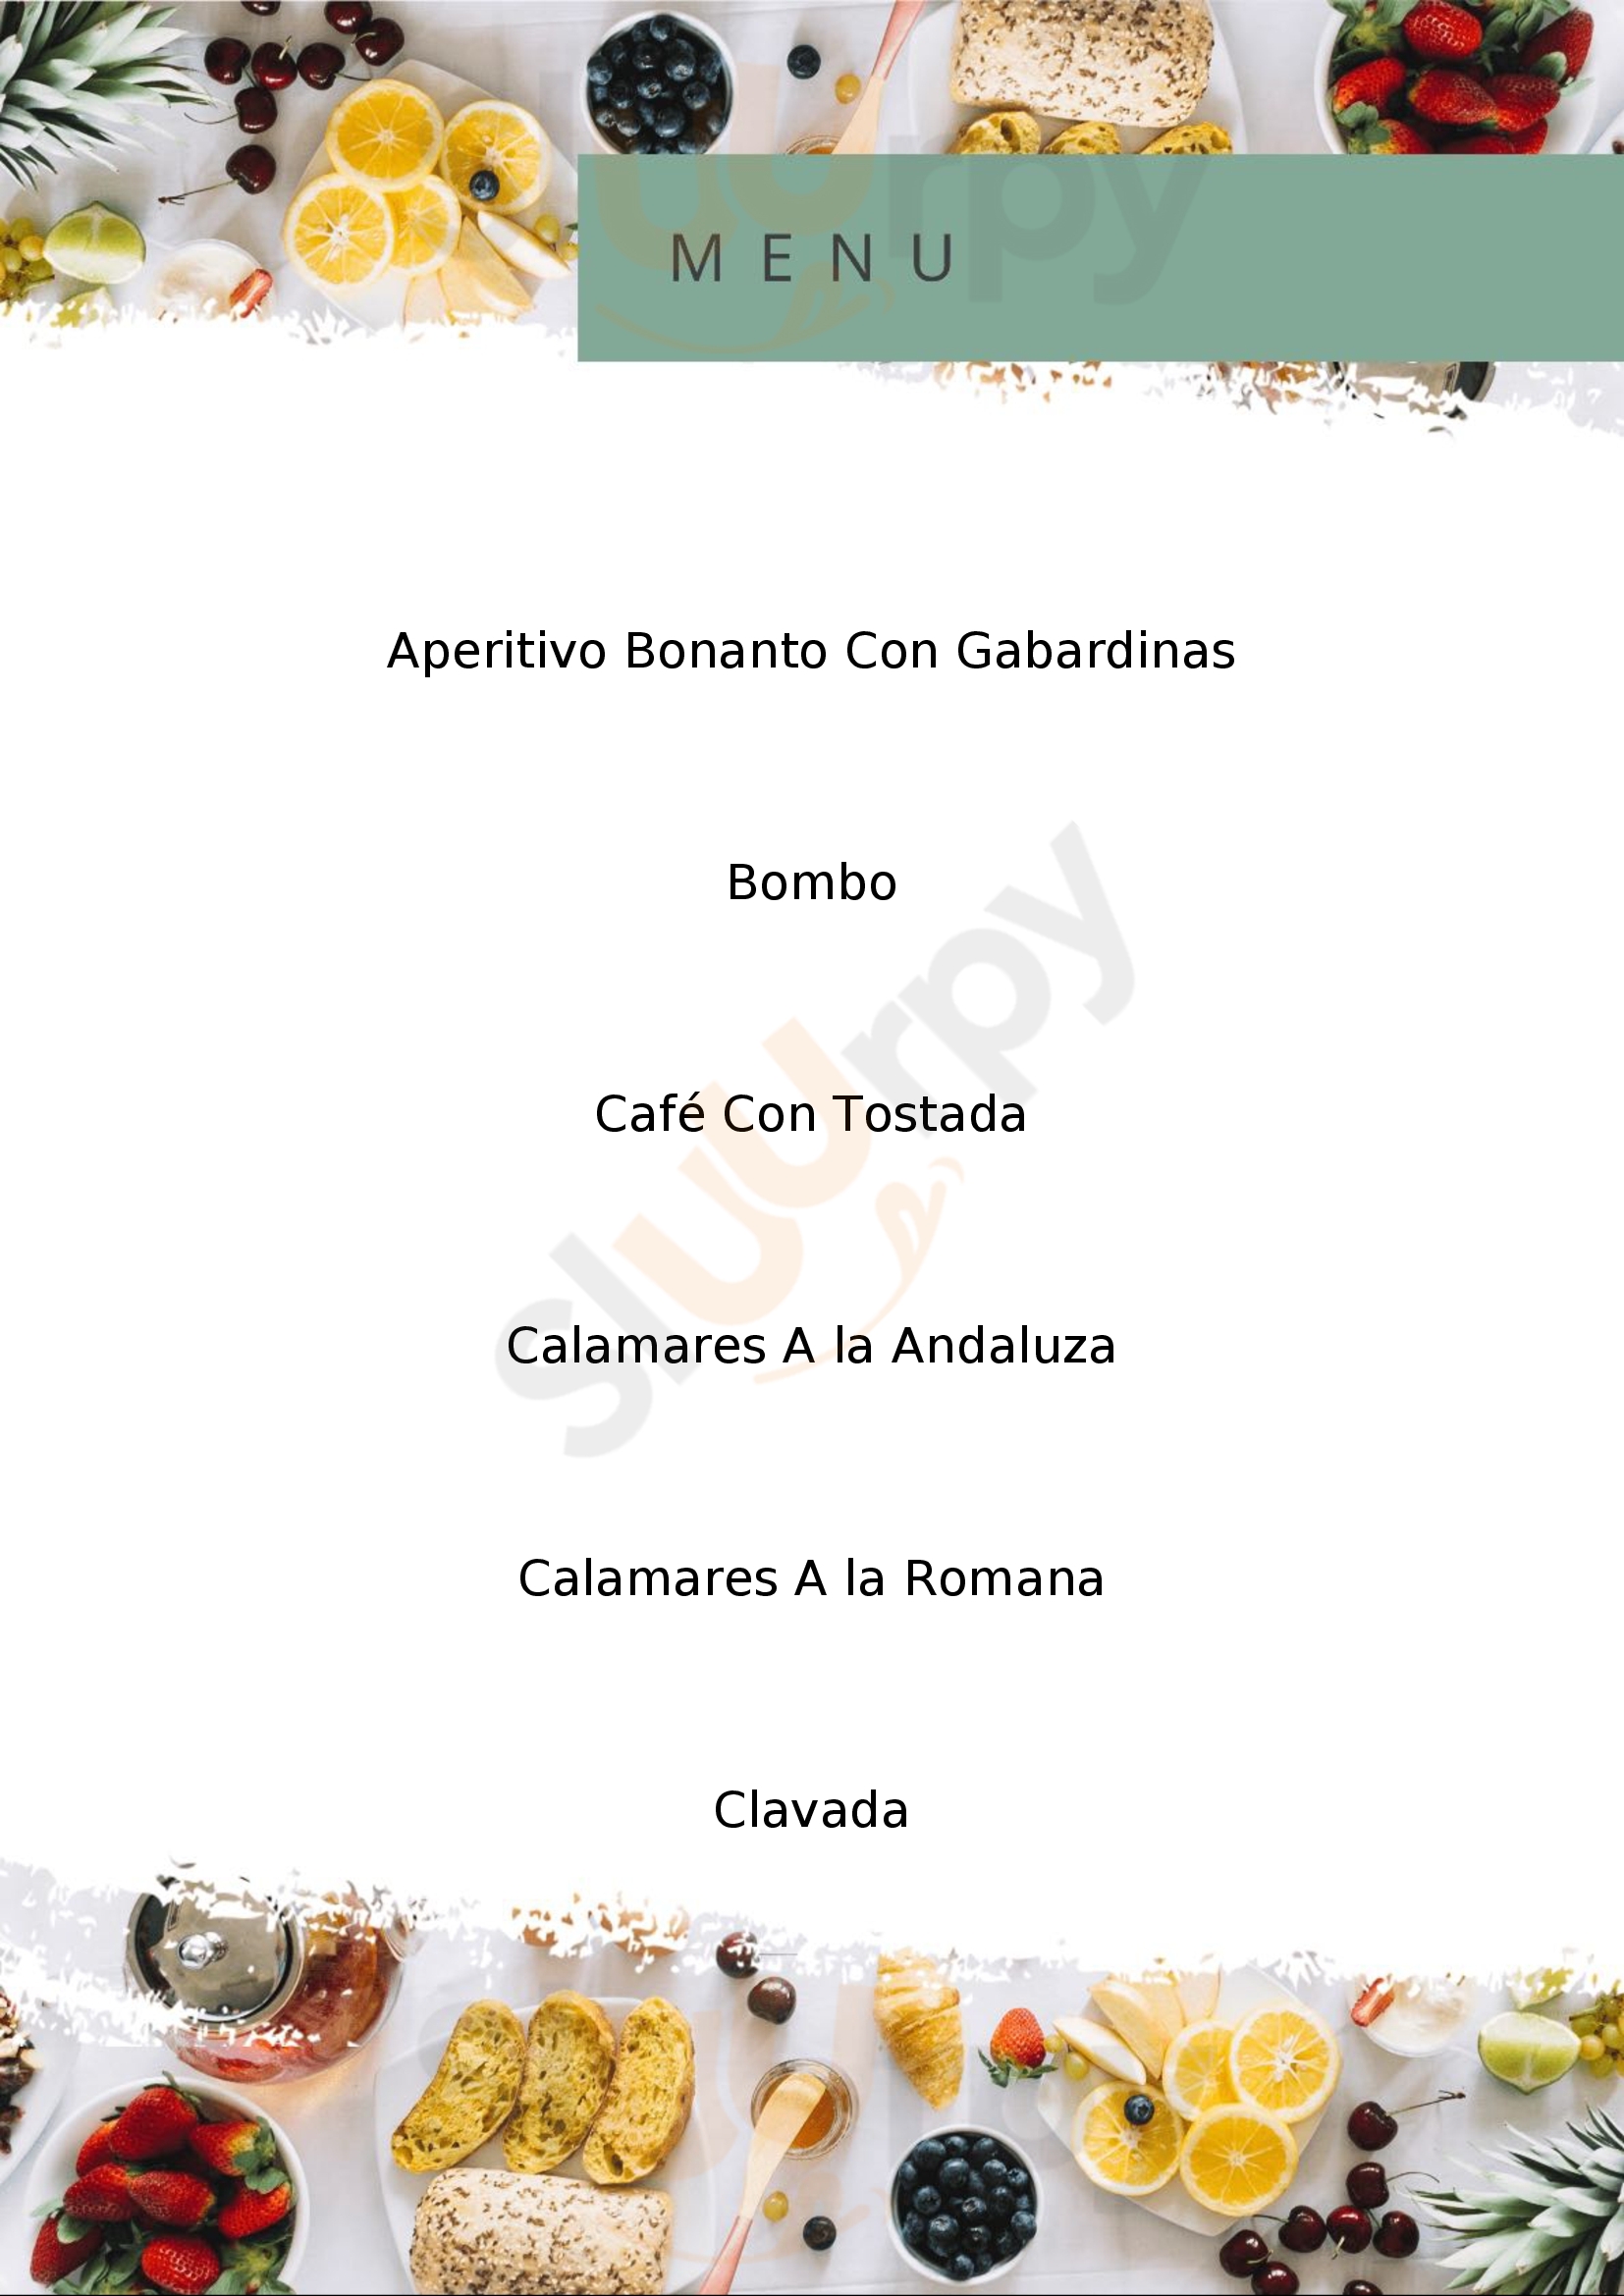 Cafe Ibiza Logroño Menu - 1